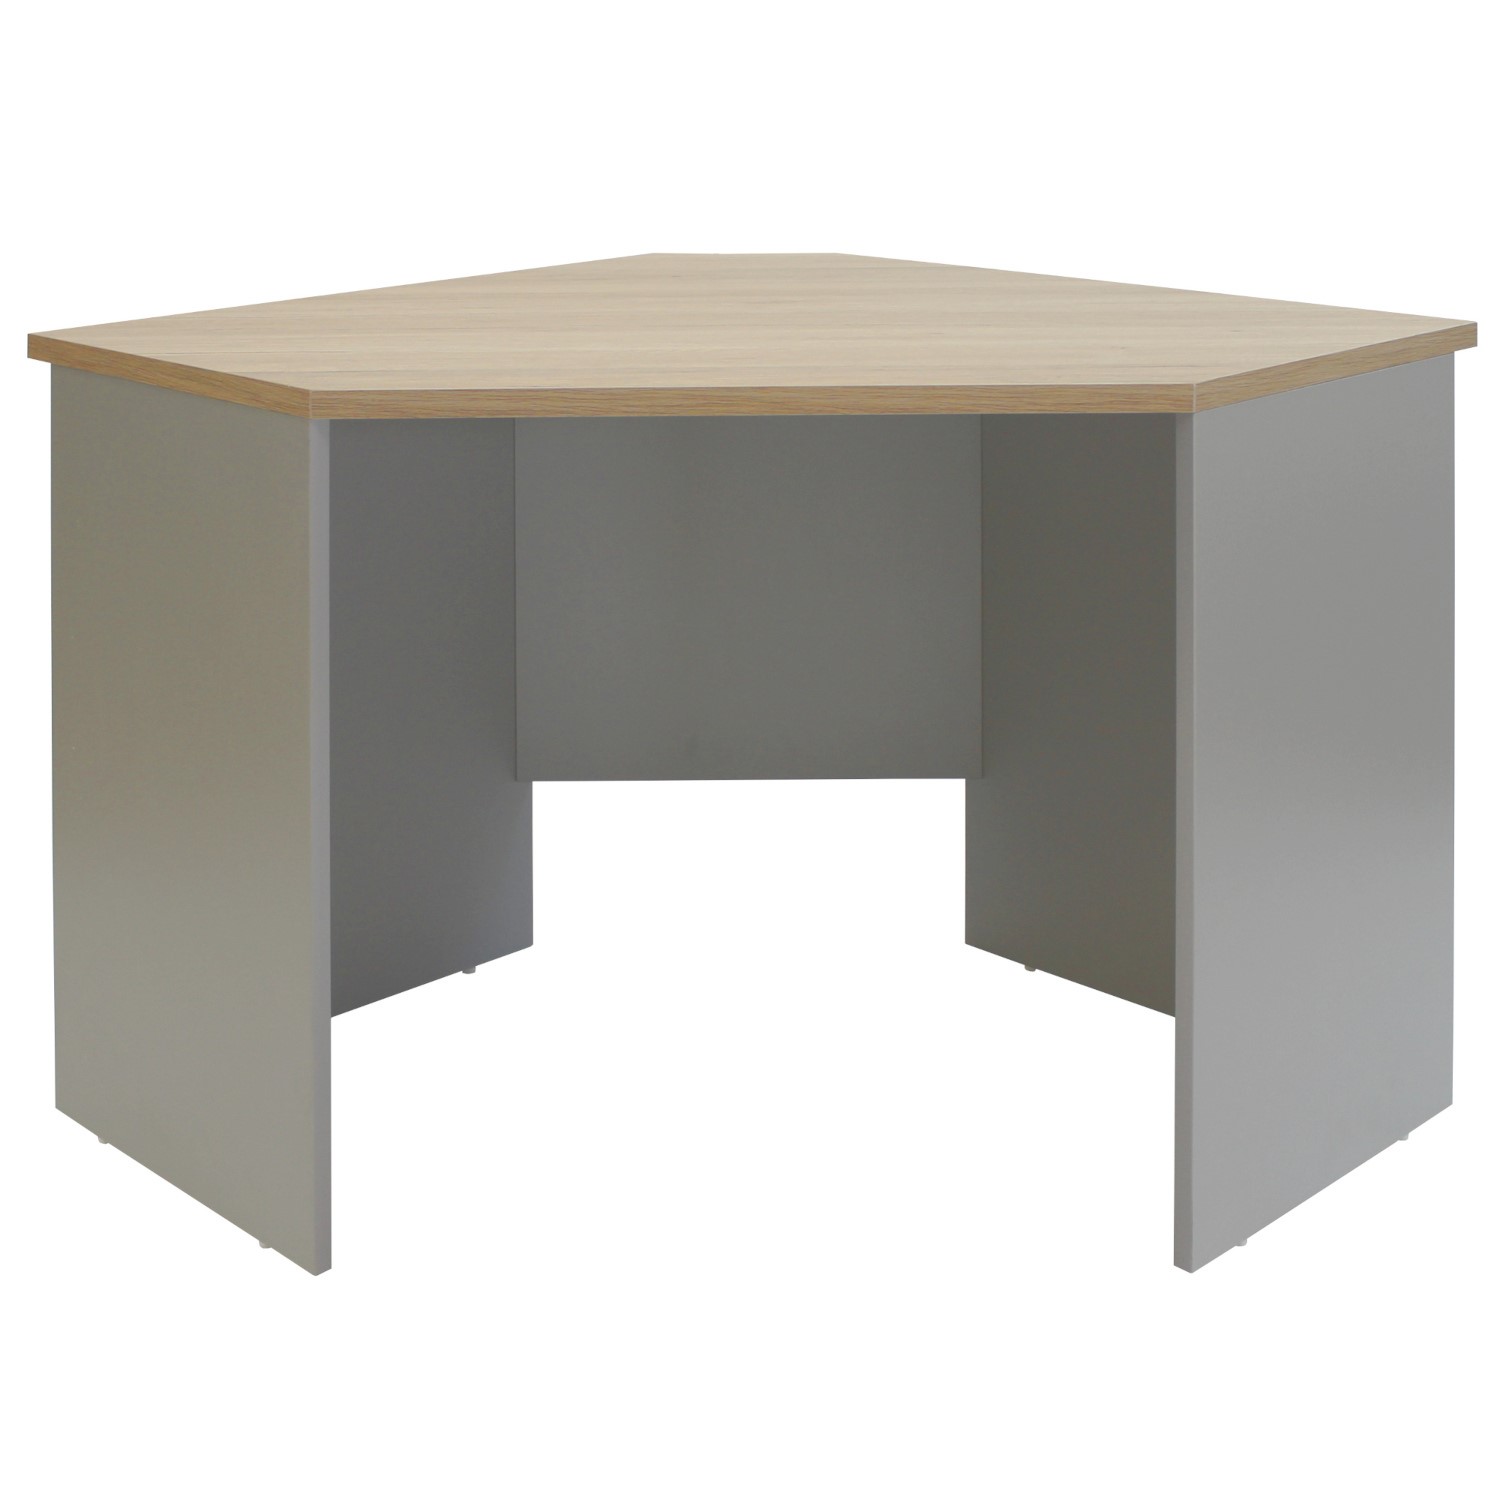 Read more about Light grey washed oak corner desk denver